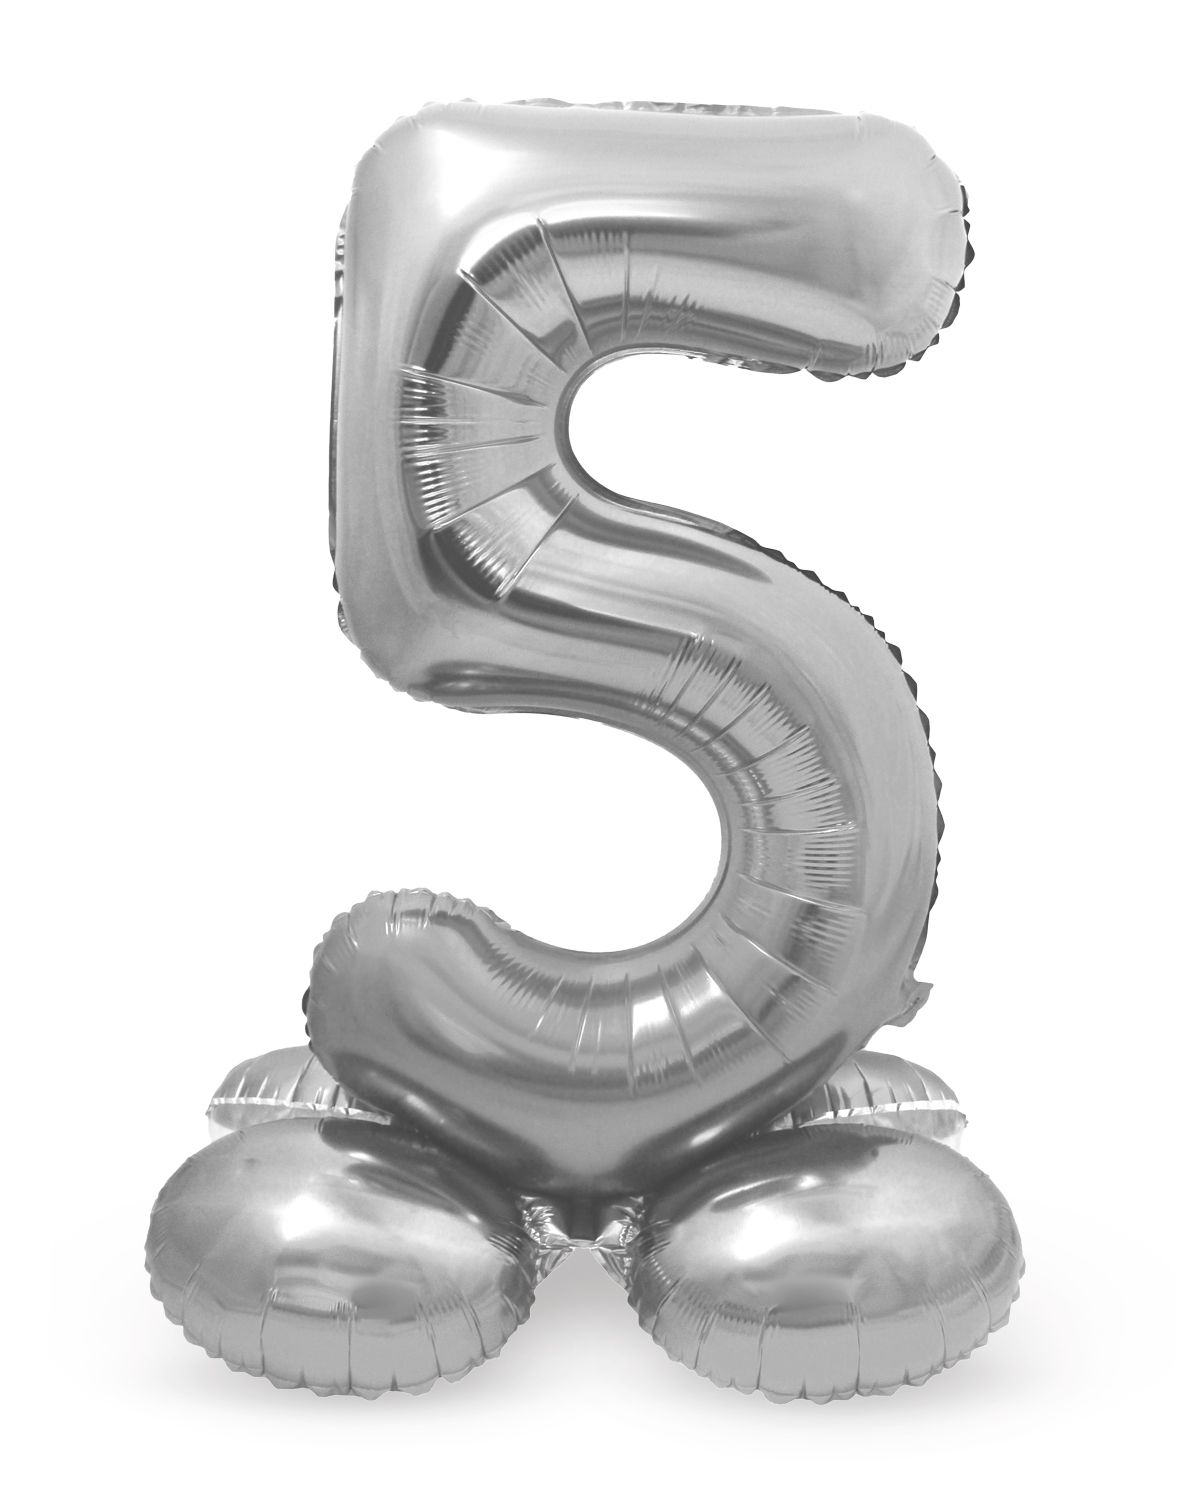 Folieballon cijfer 5 zilver met standaard 72cm